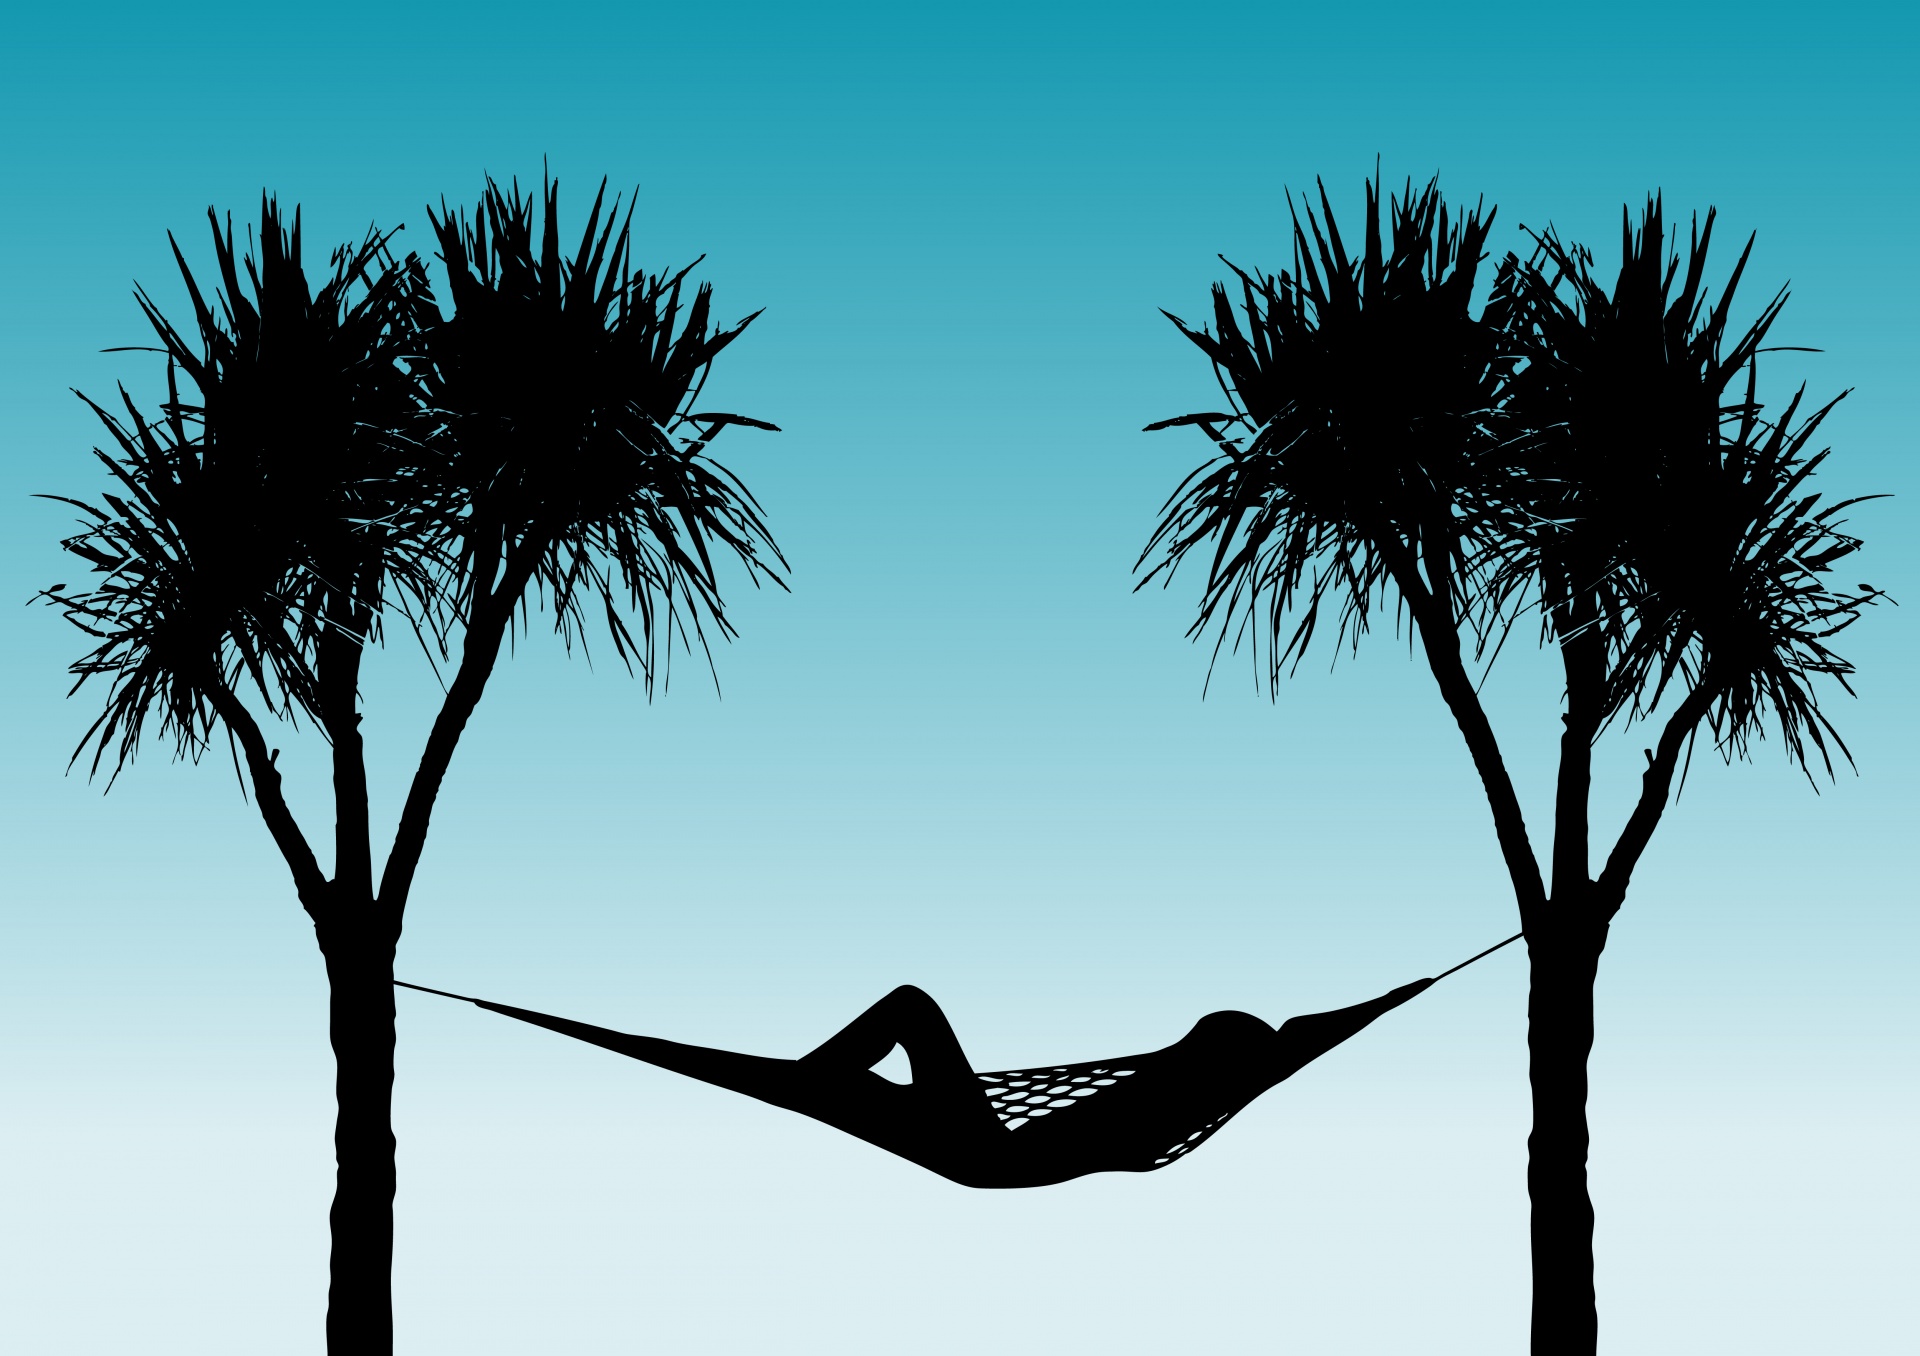 Hangmat tussen palmbomen